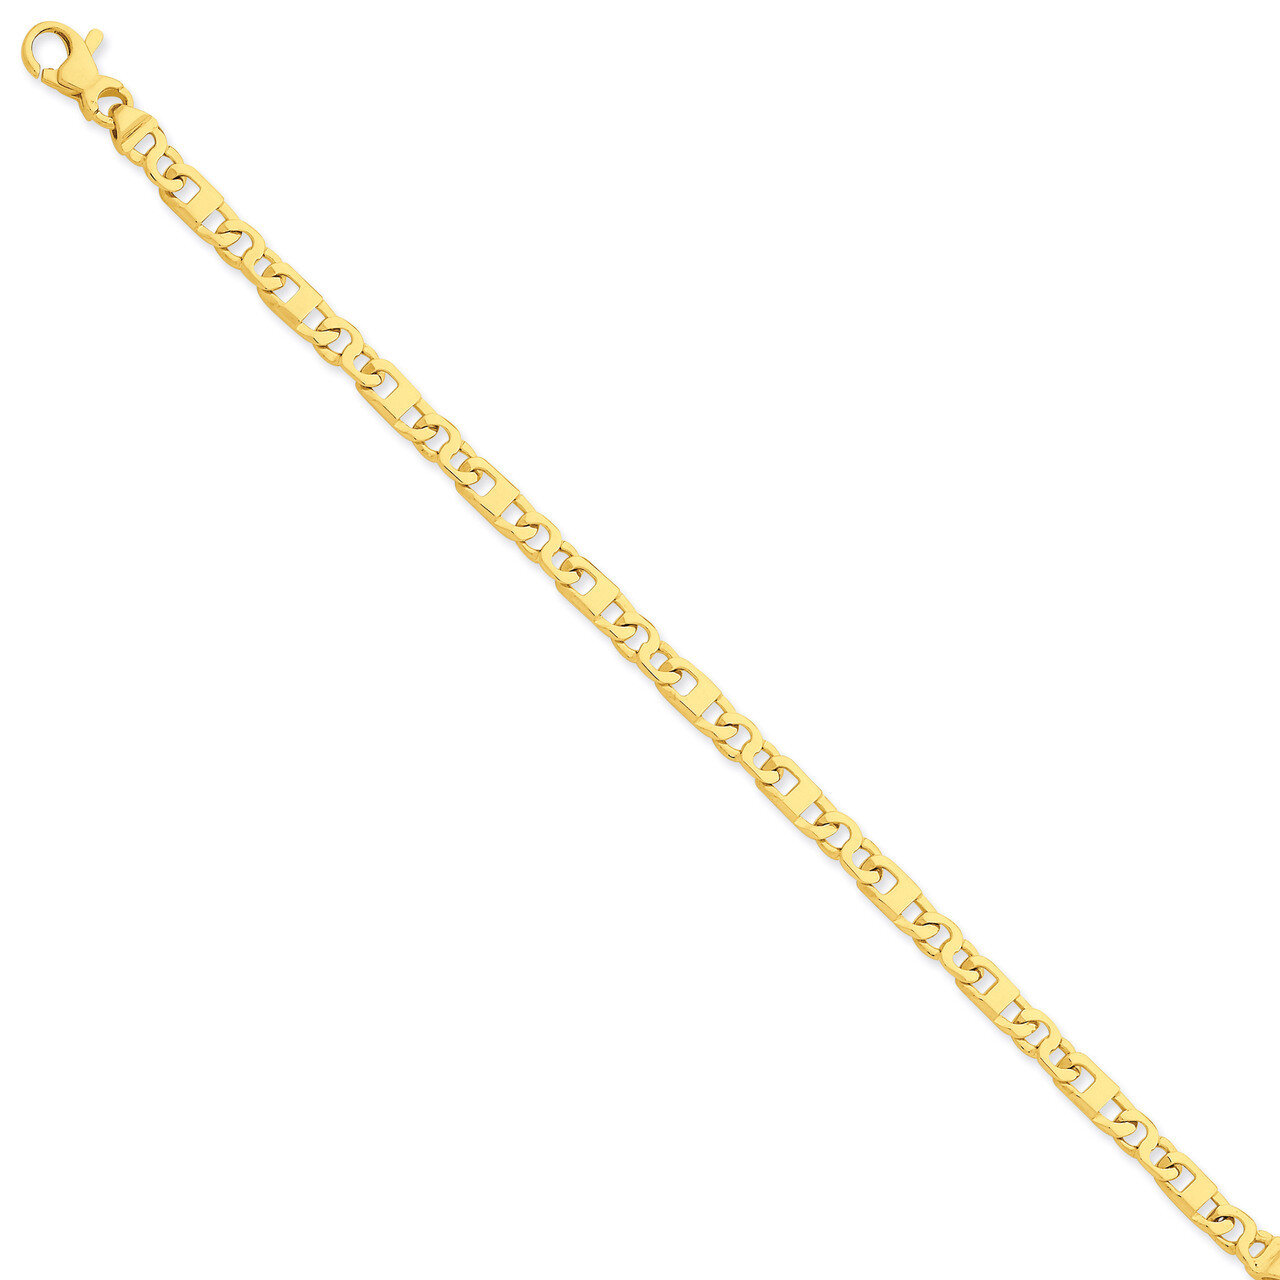 Fancy Link Chain 7.25 Inch 14k Gold LK669-7.25